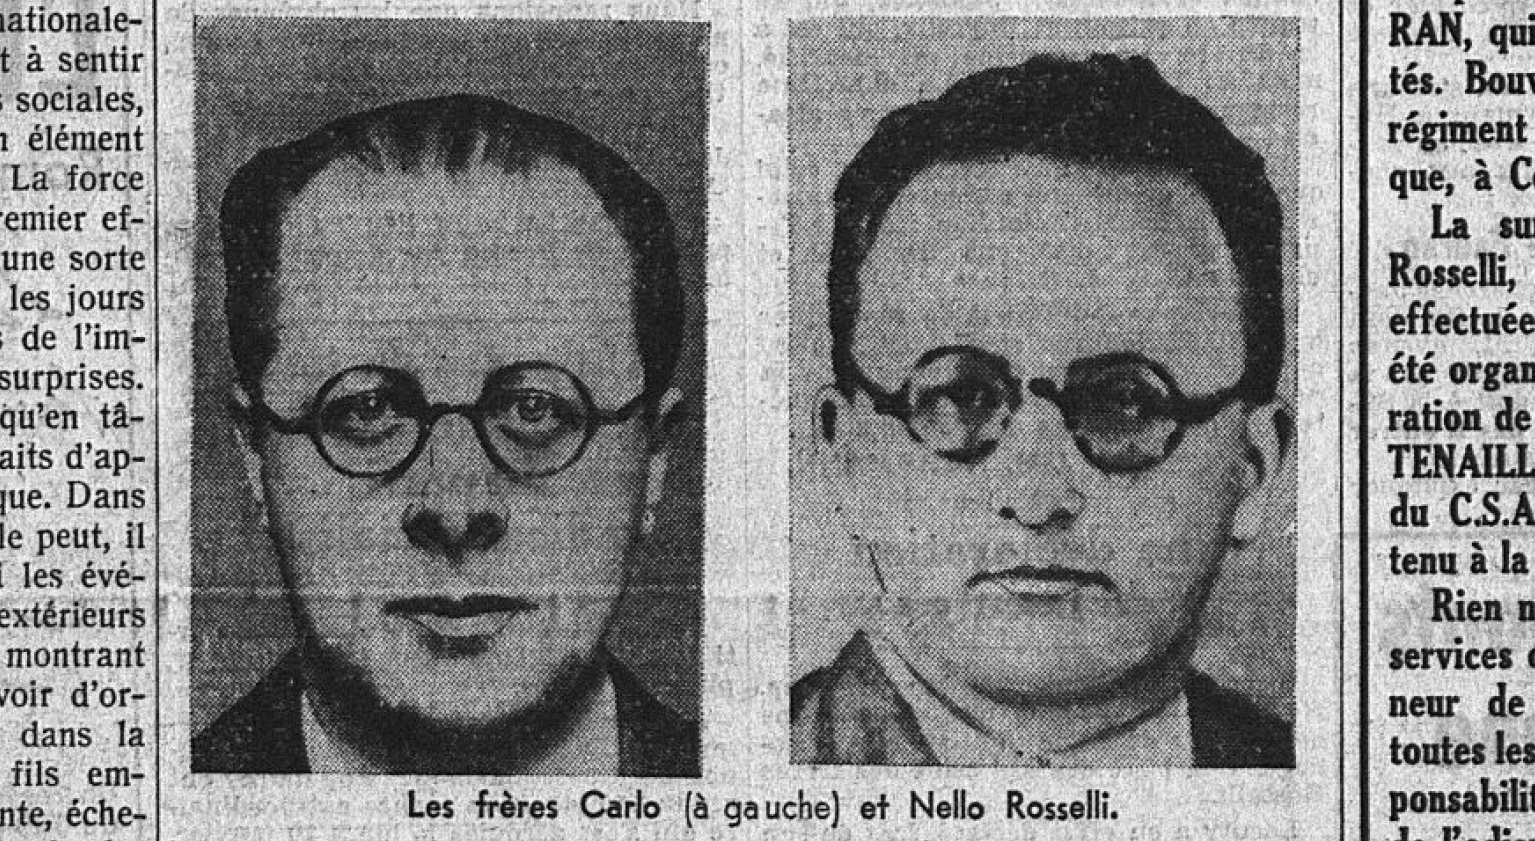 Les frères Carlo (à gauche) et Nello Rosselli. Source : RetroNews - BnF